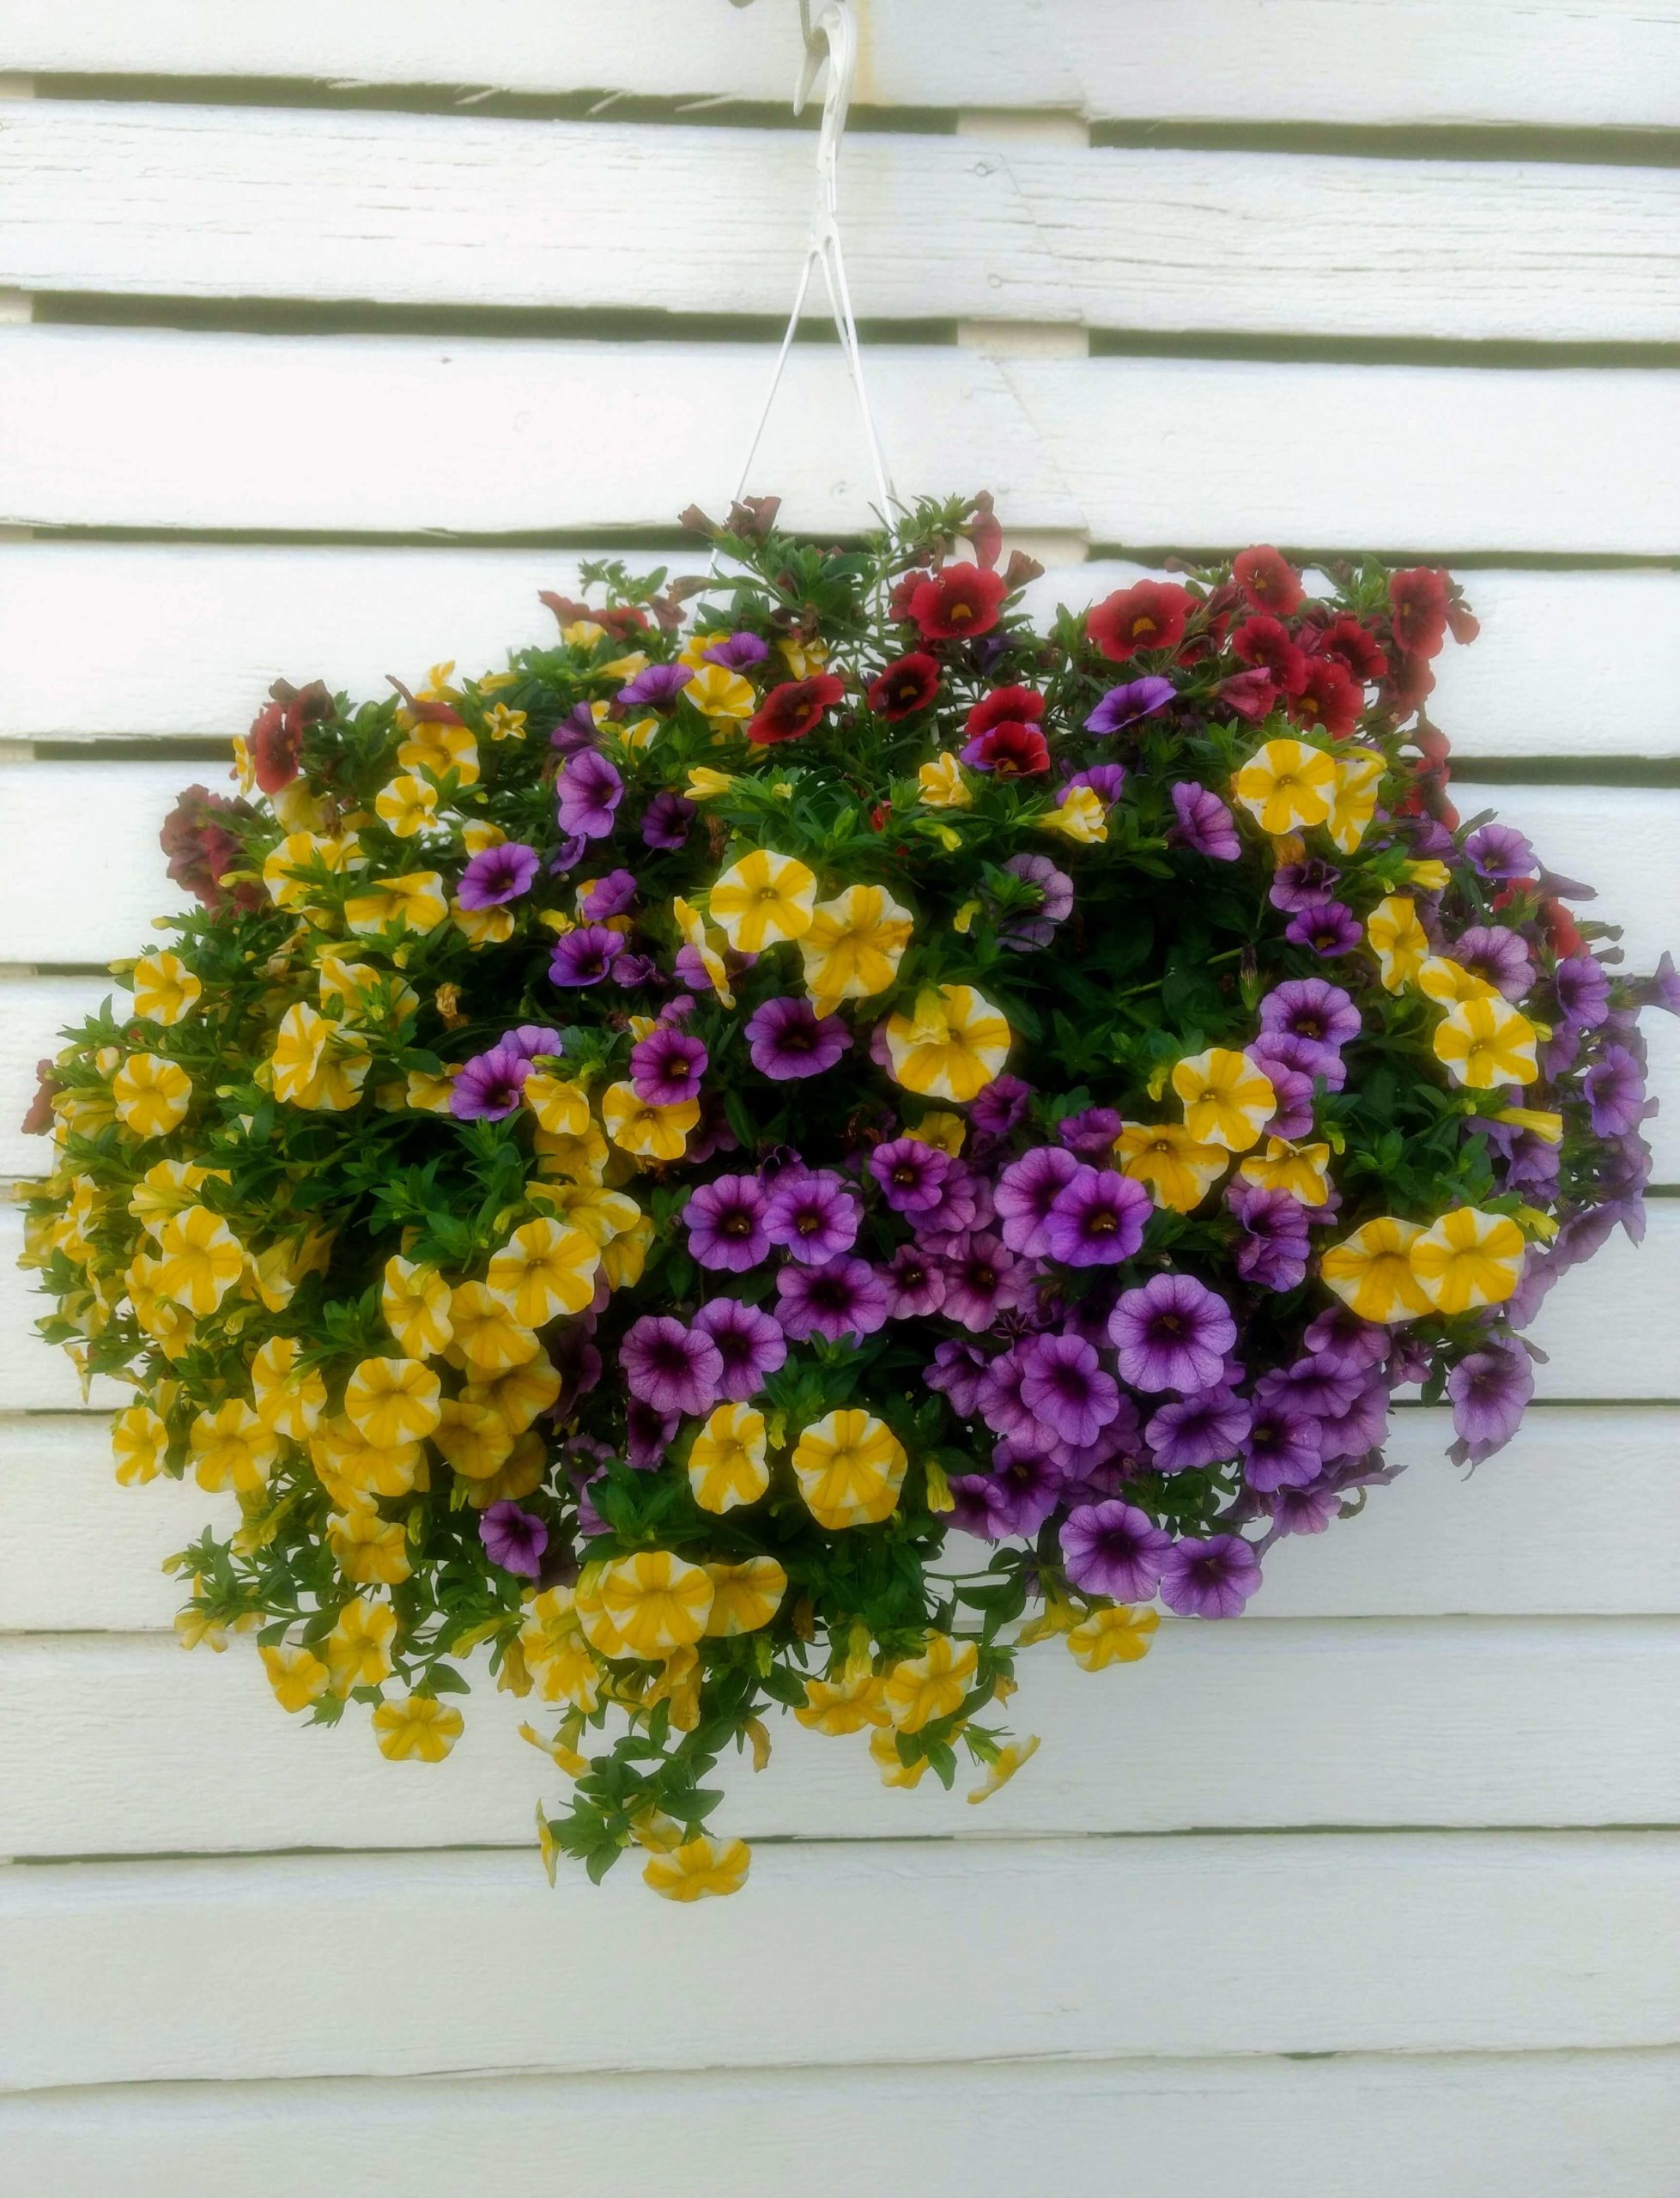 Hanging basket with callibroachoa flowers